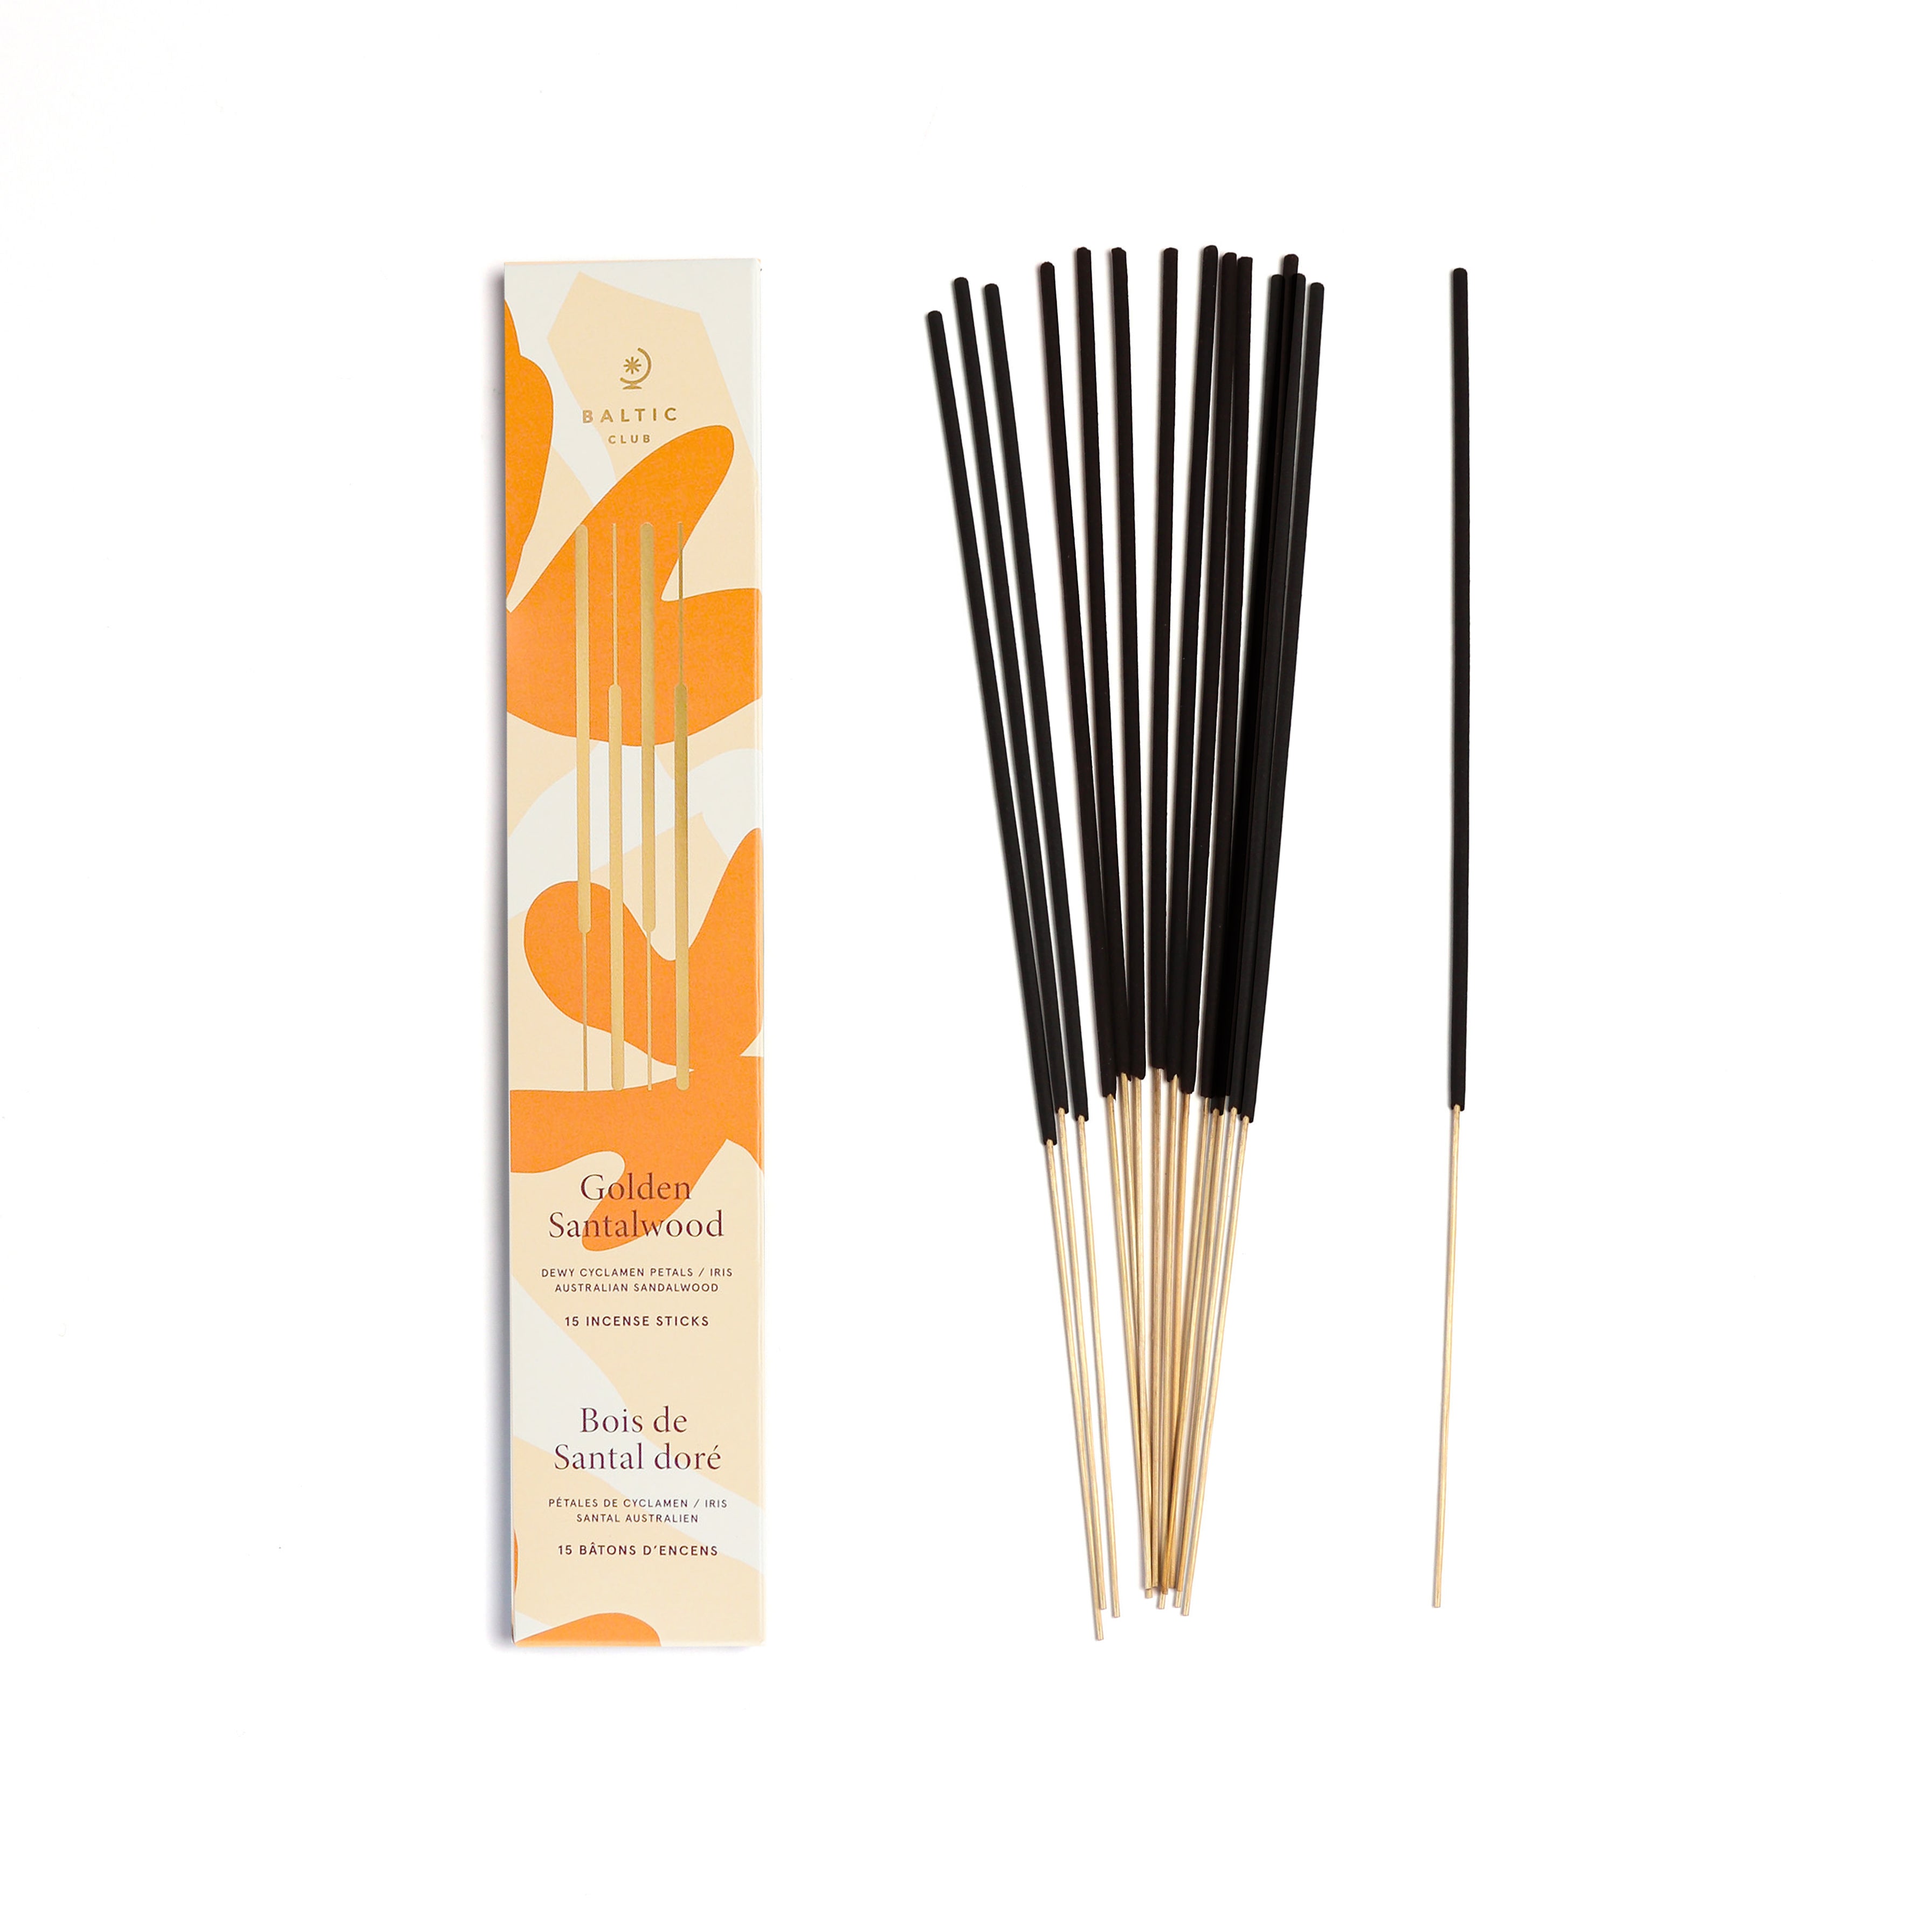 Incense Sticks - Golden Sandalwood